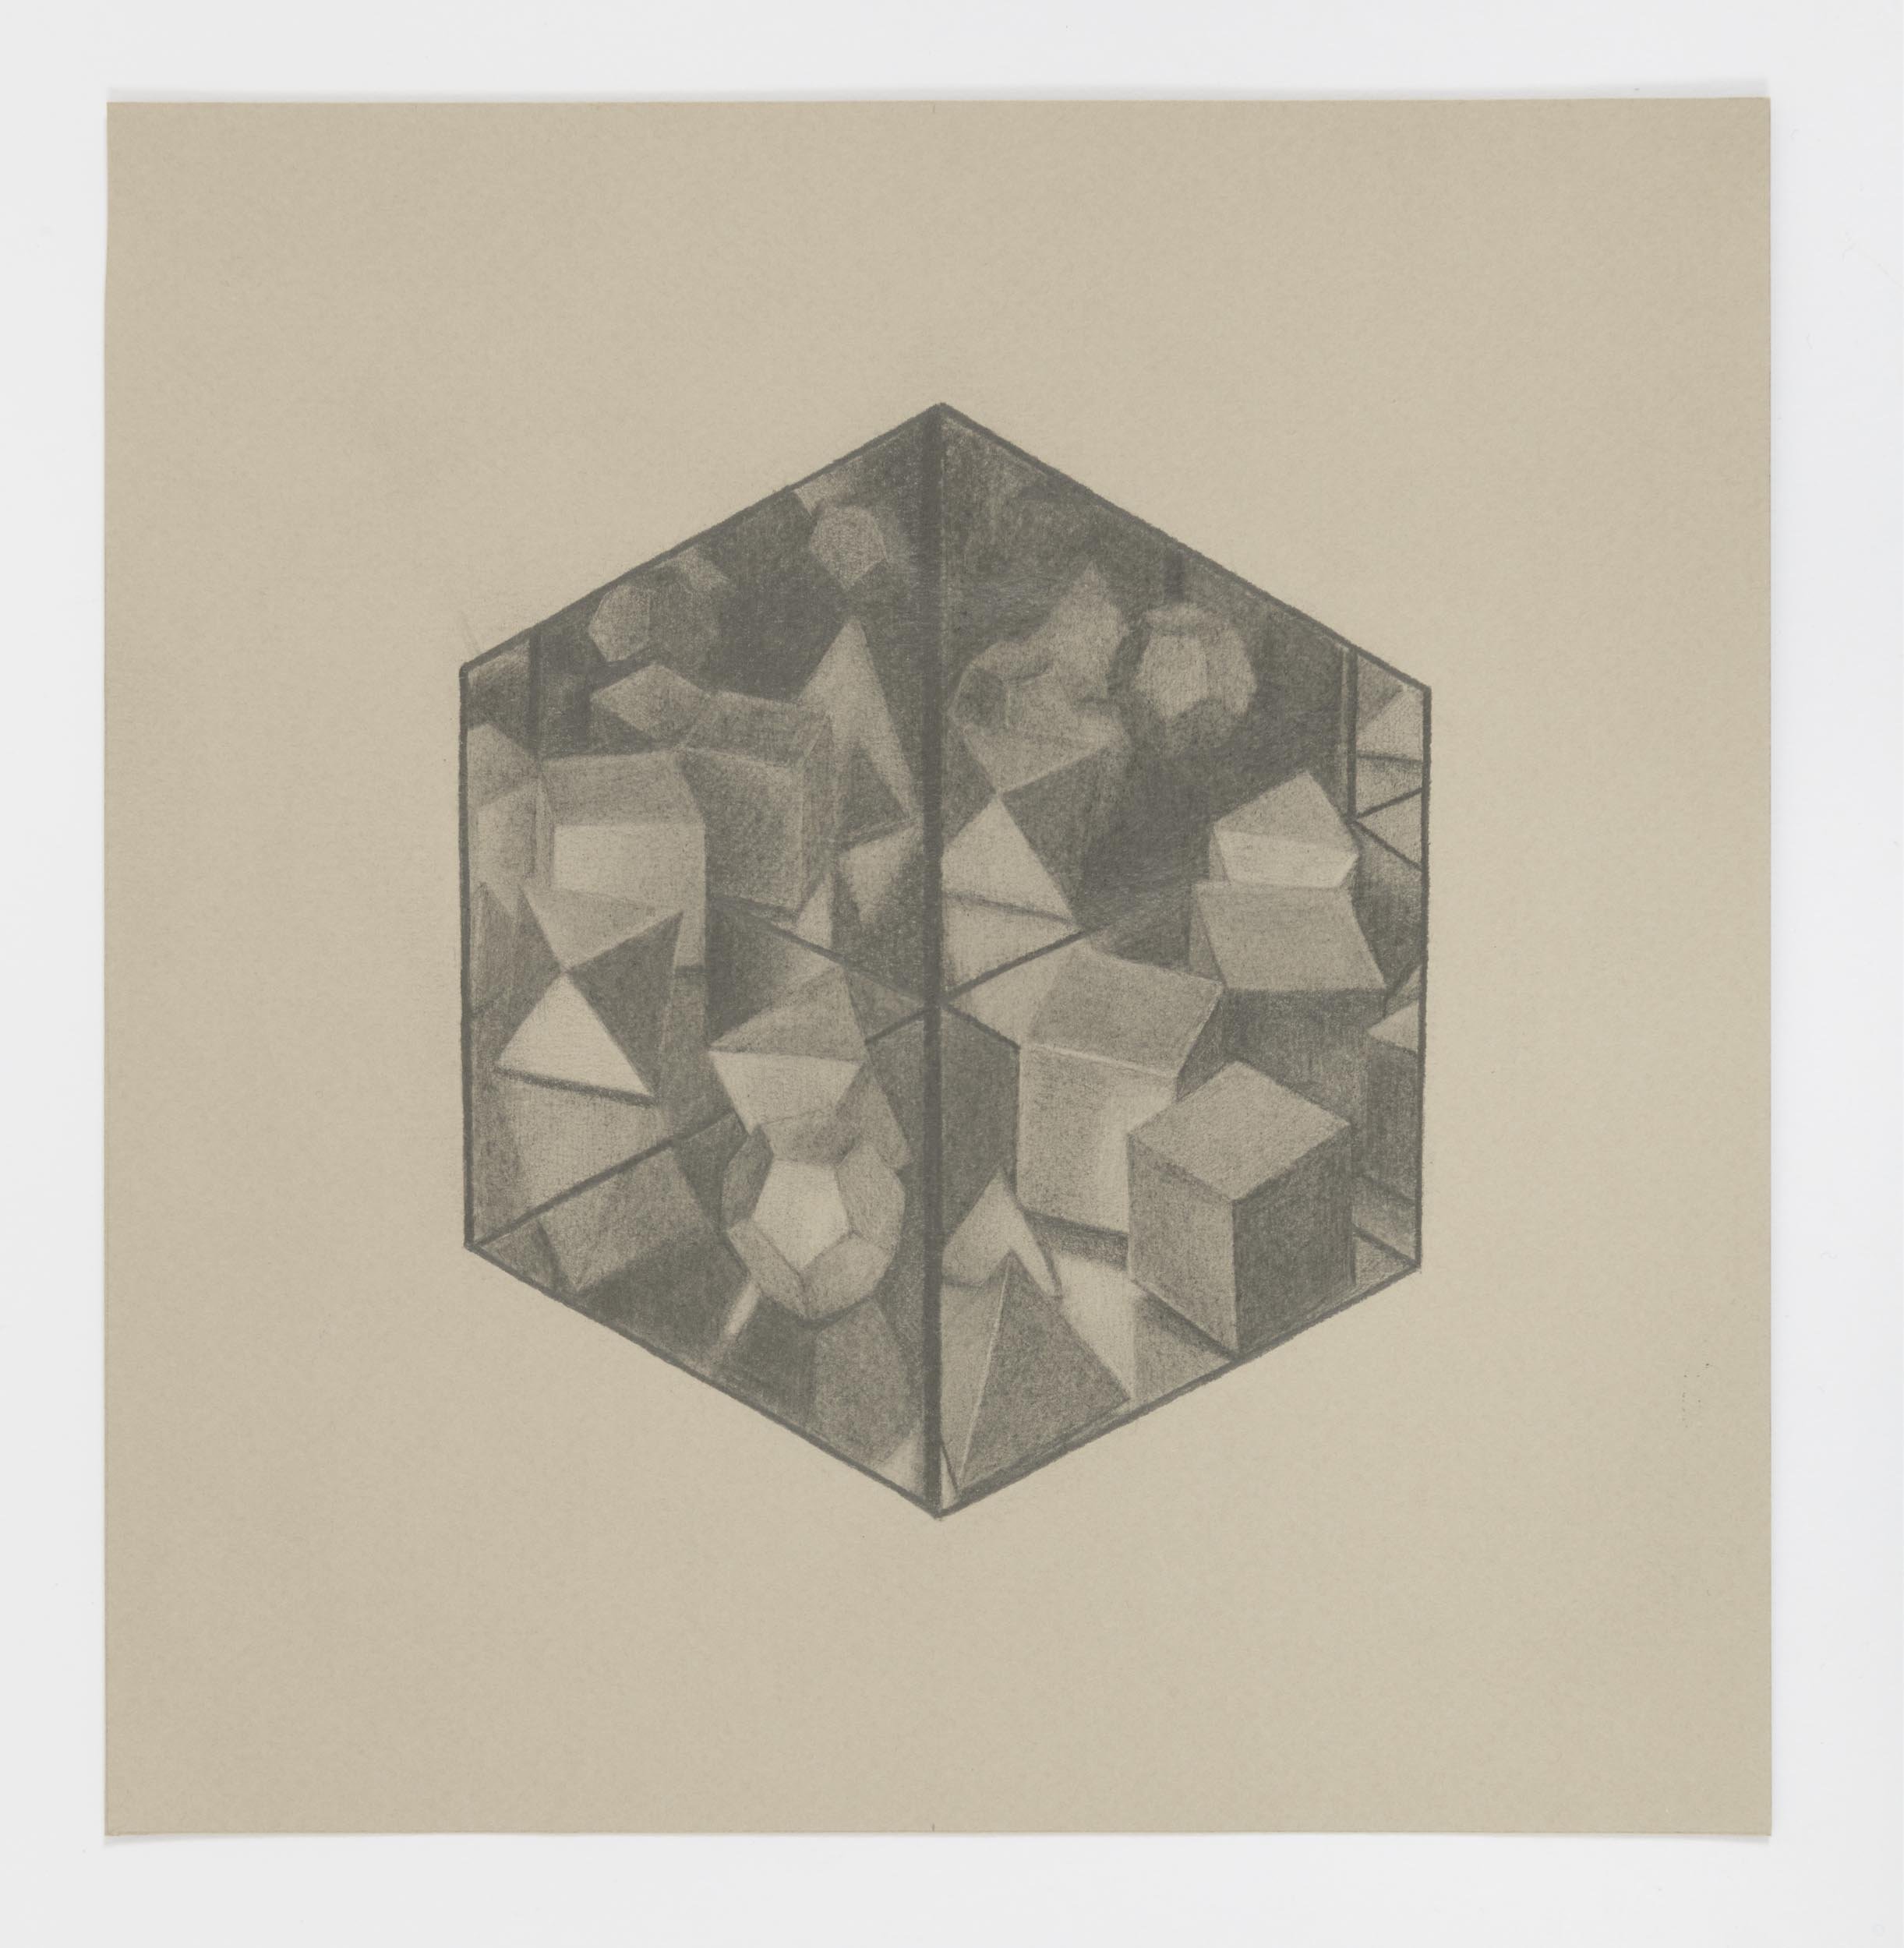  Cube 2, 2020 graphite on paper 8⅝ x 8¼ in. &nbsp; 21.91 x 20.96 cm. 